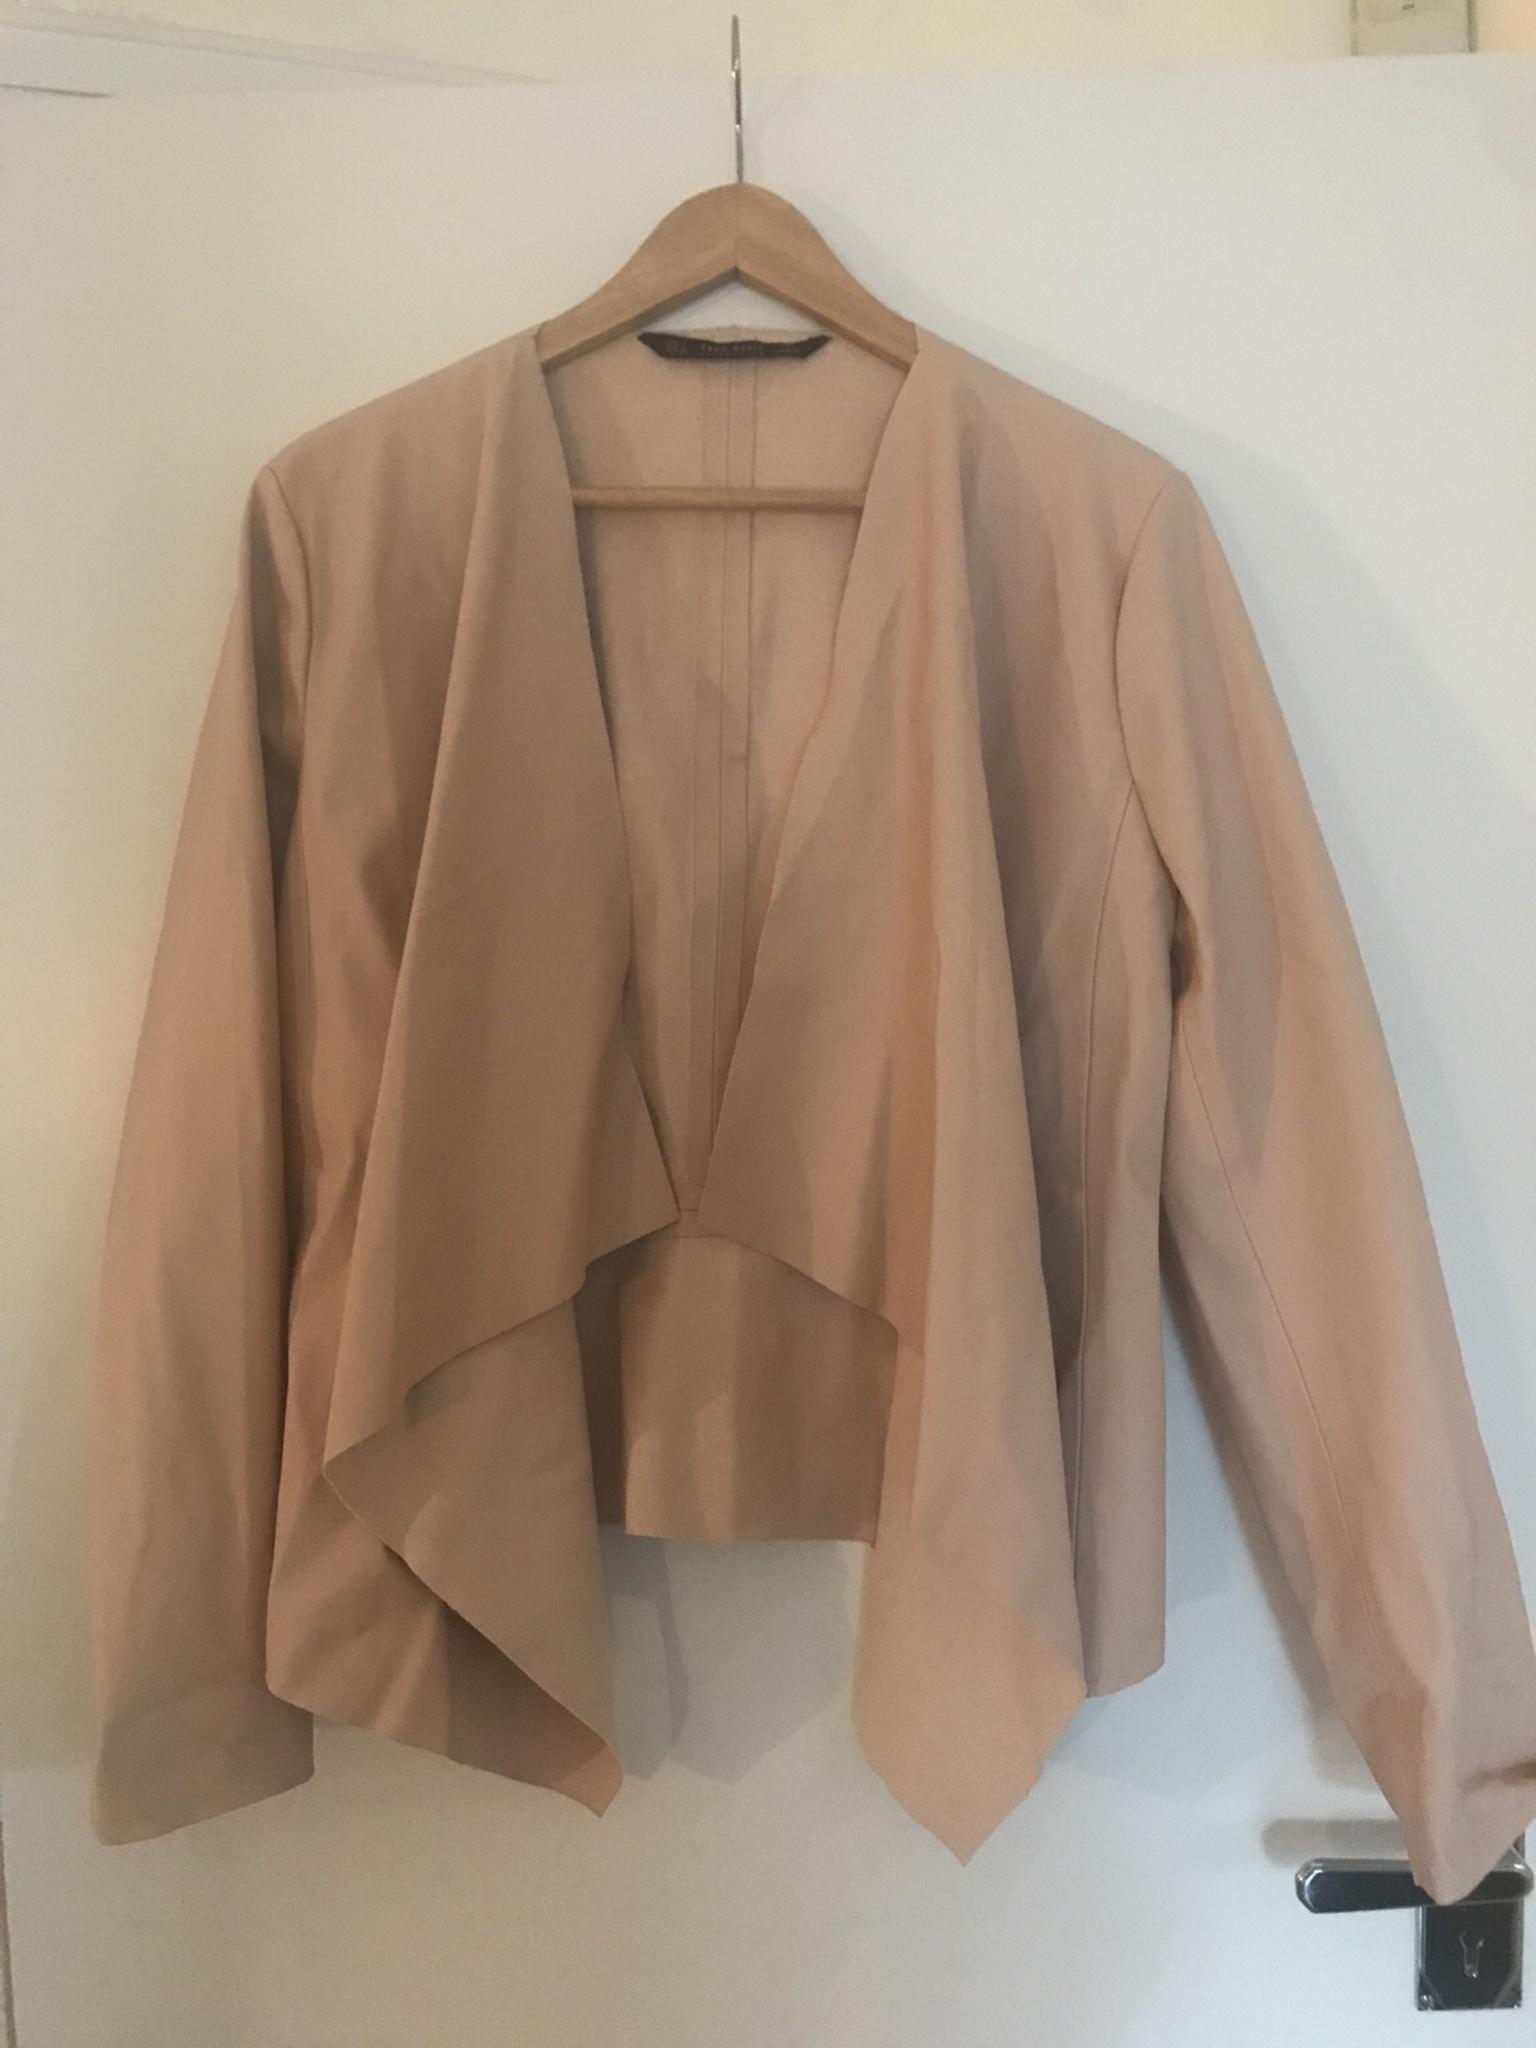 zara pink faux leather jacket